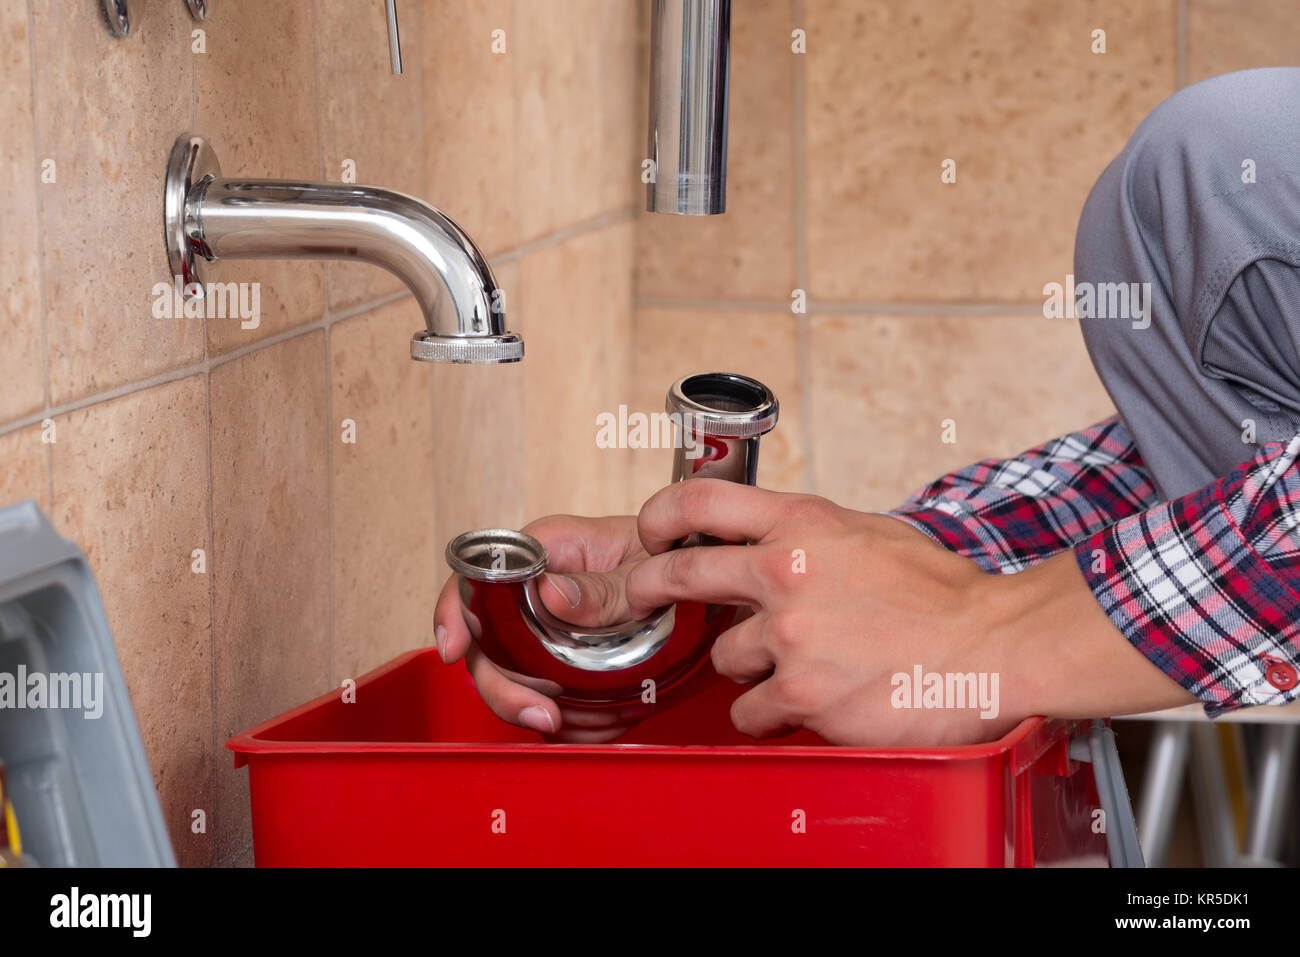 https://c8.alamy.com/comp/KR5DK1/plumbers-hand-fixing-sink-in-bathroom-KR5DK1.jpg